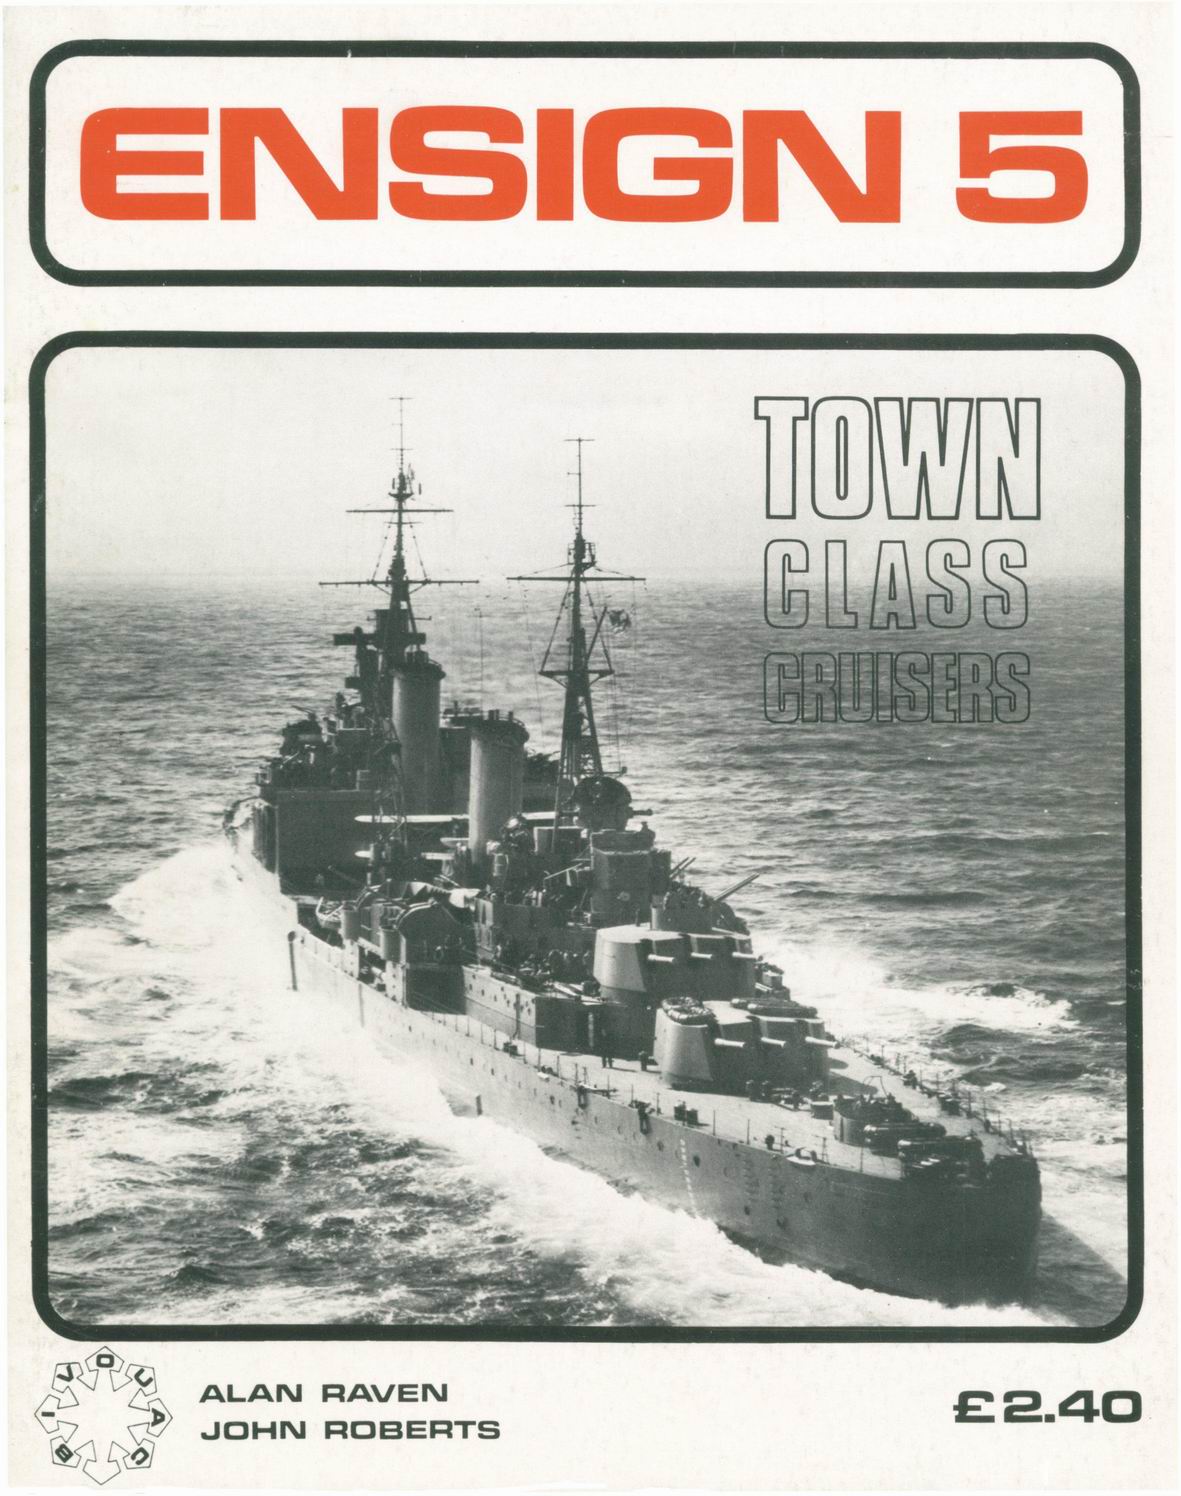 Ensign 5_Town-class.JPG